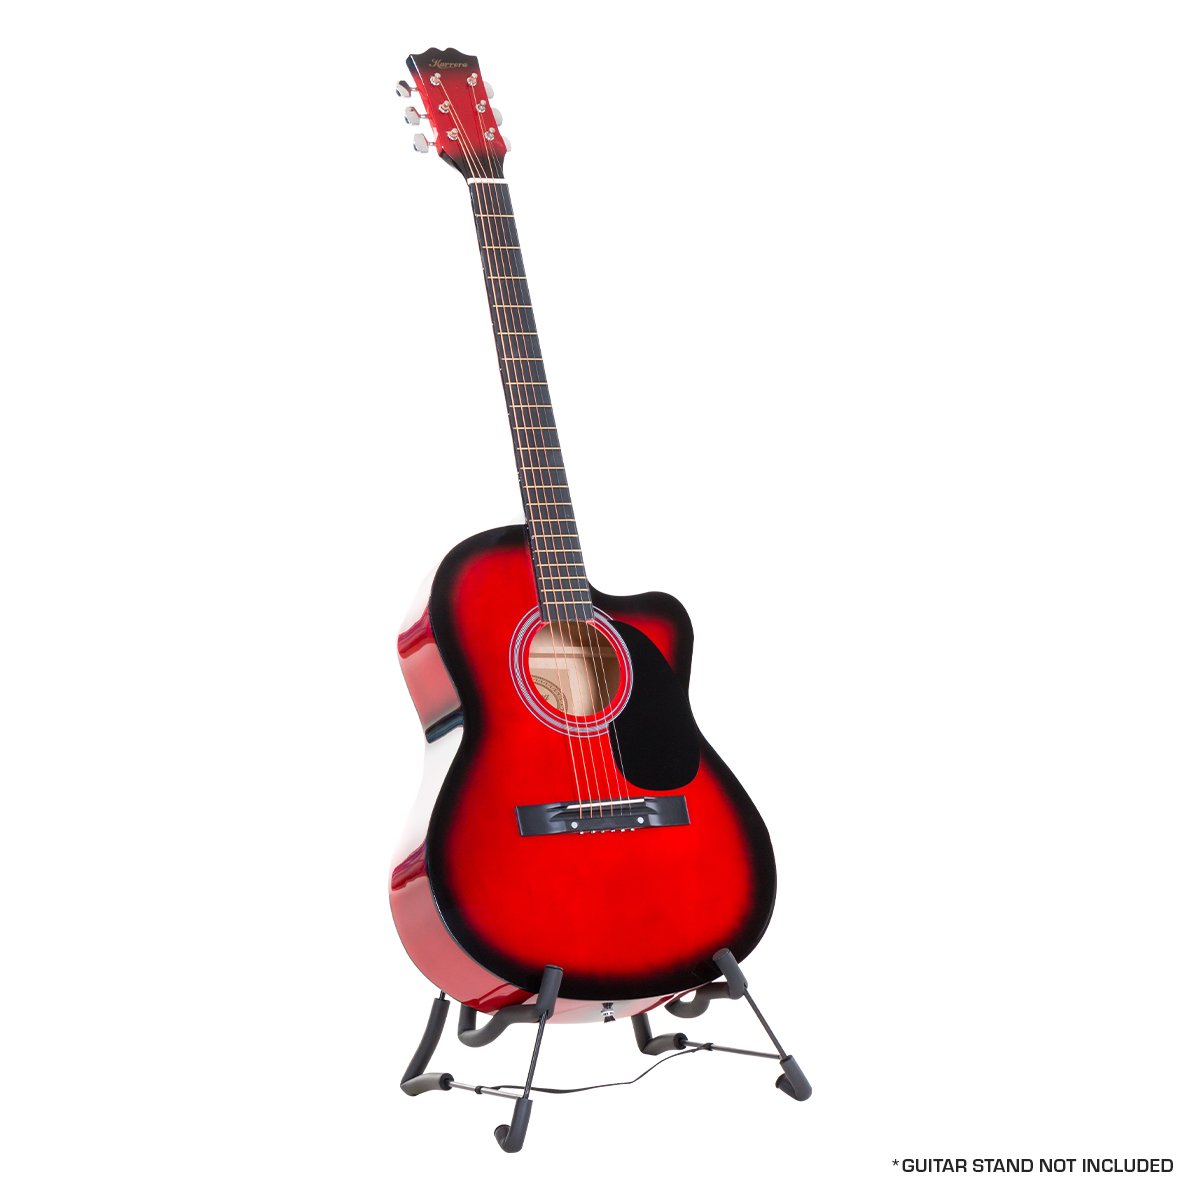 Karrera Acoustic Cutaway 40in Guitar - Red 2